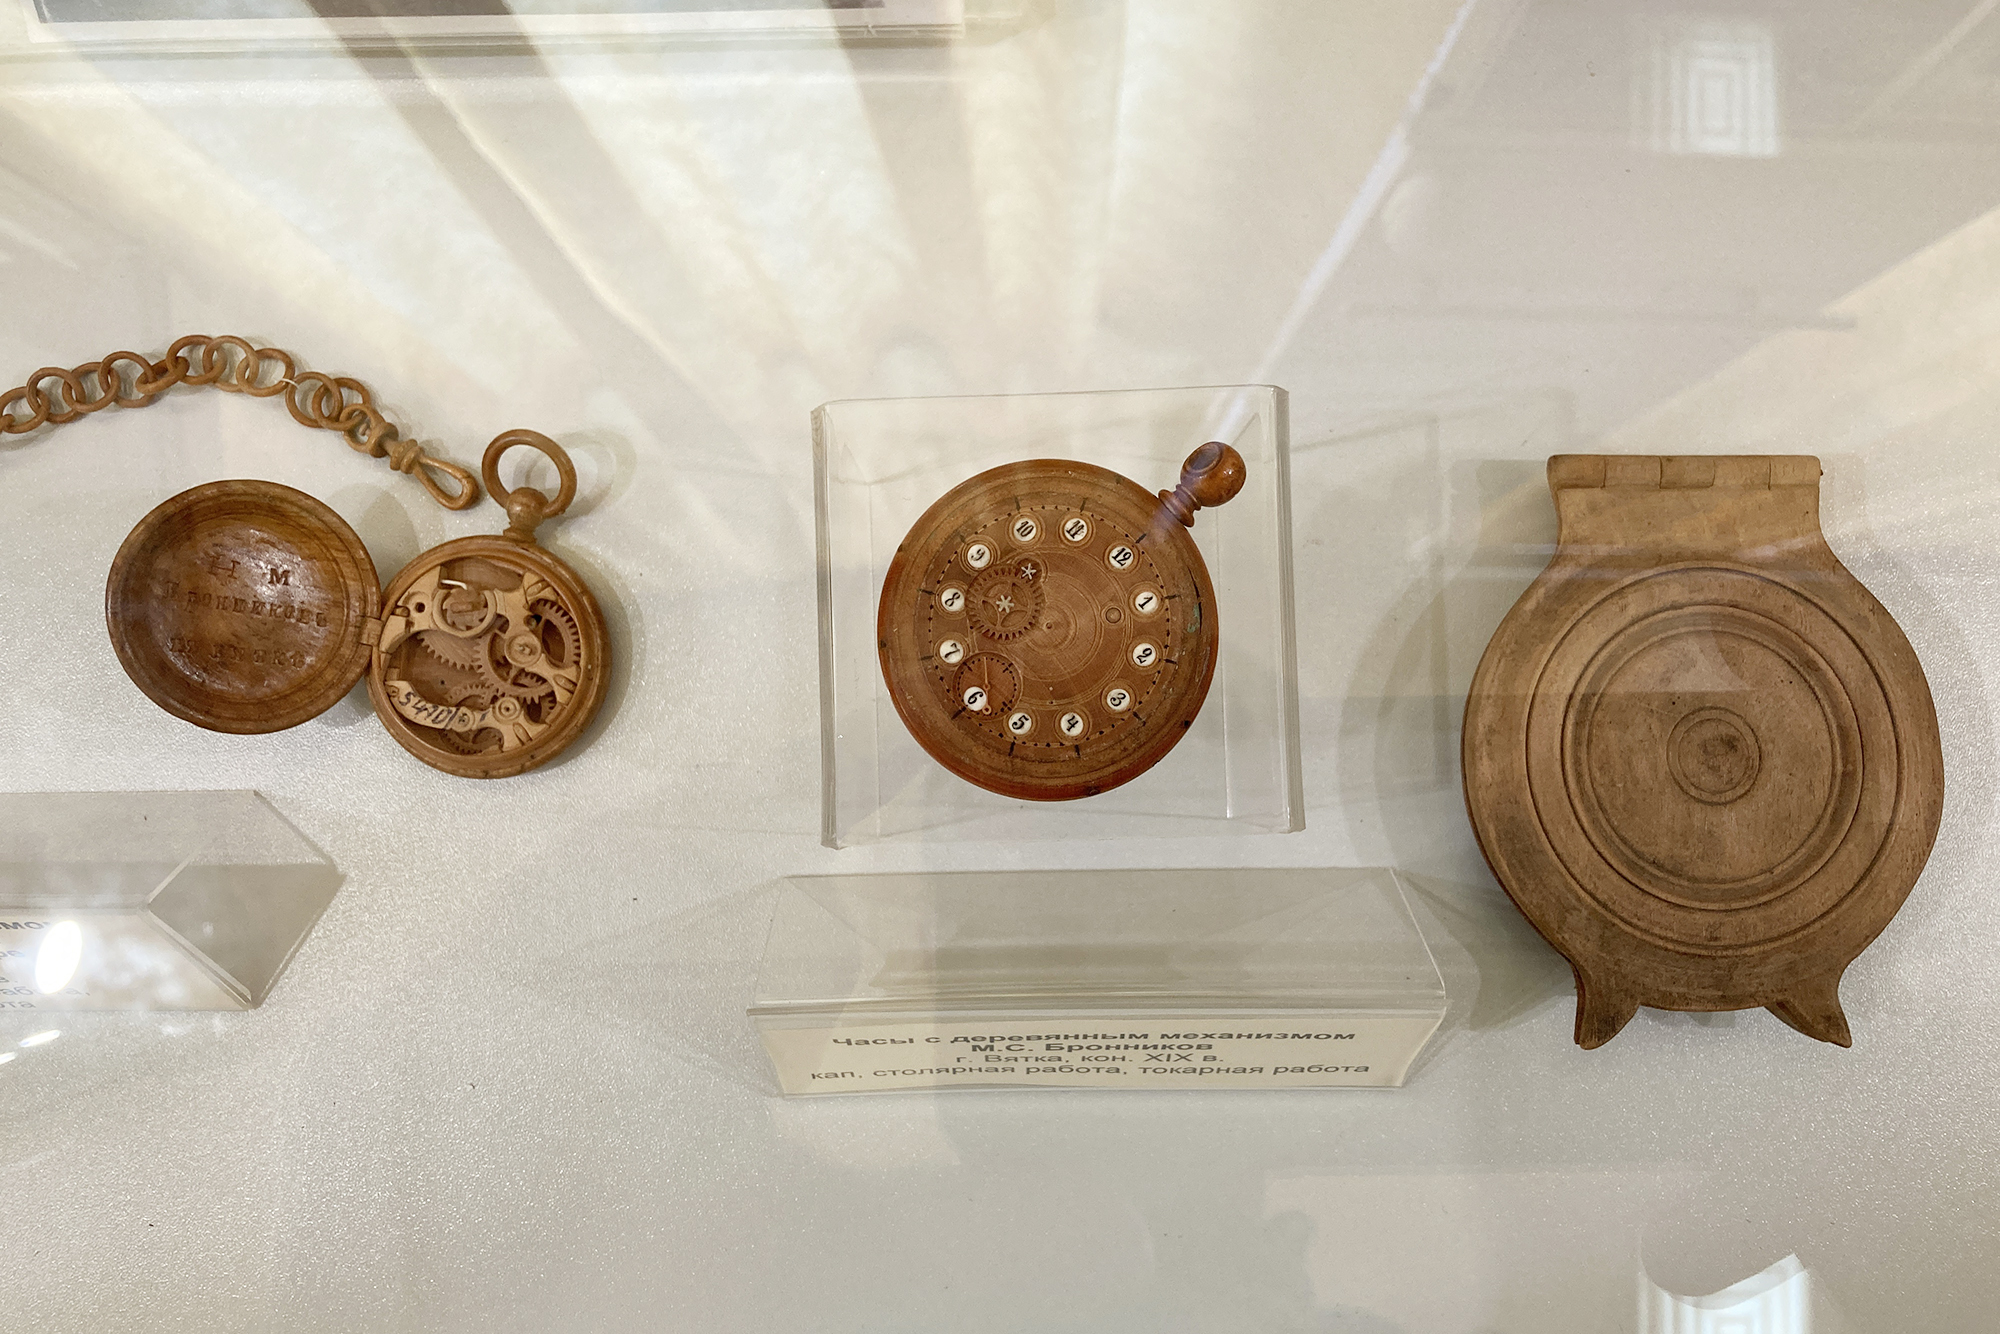 В музее хранятся часы с деревянным механизмом мастера Семена Бронникова. В описании сказано, что в 2001 году на аукционе в Женеве похожие продали за 34 500 CHF (2 579 077 ₽)